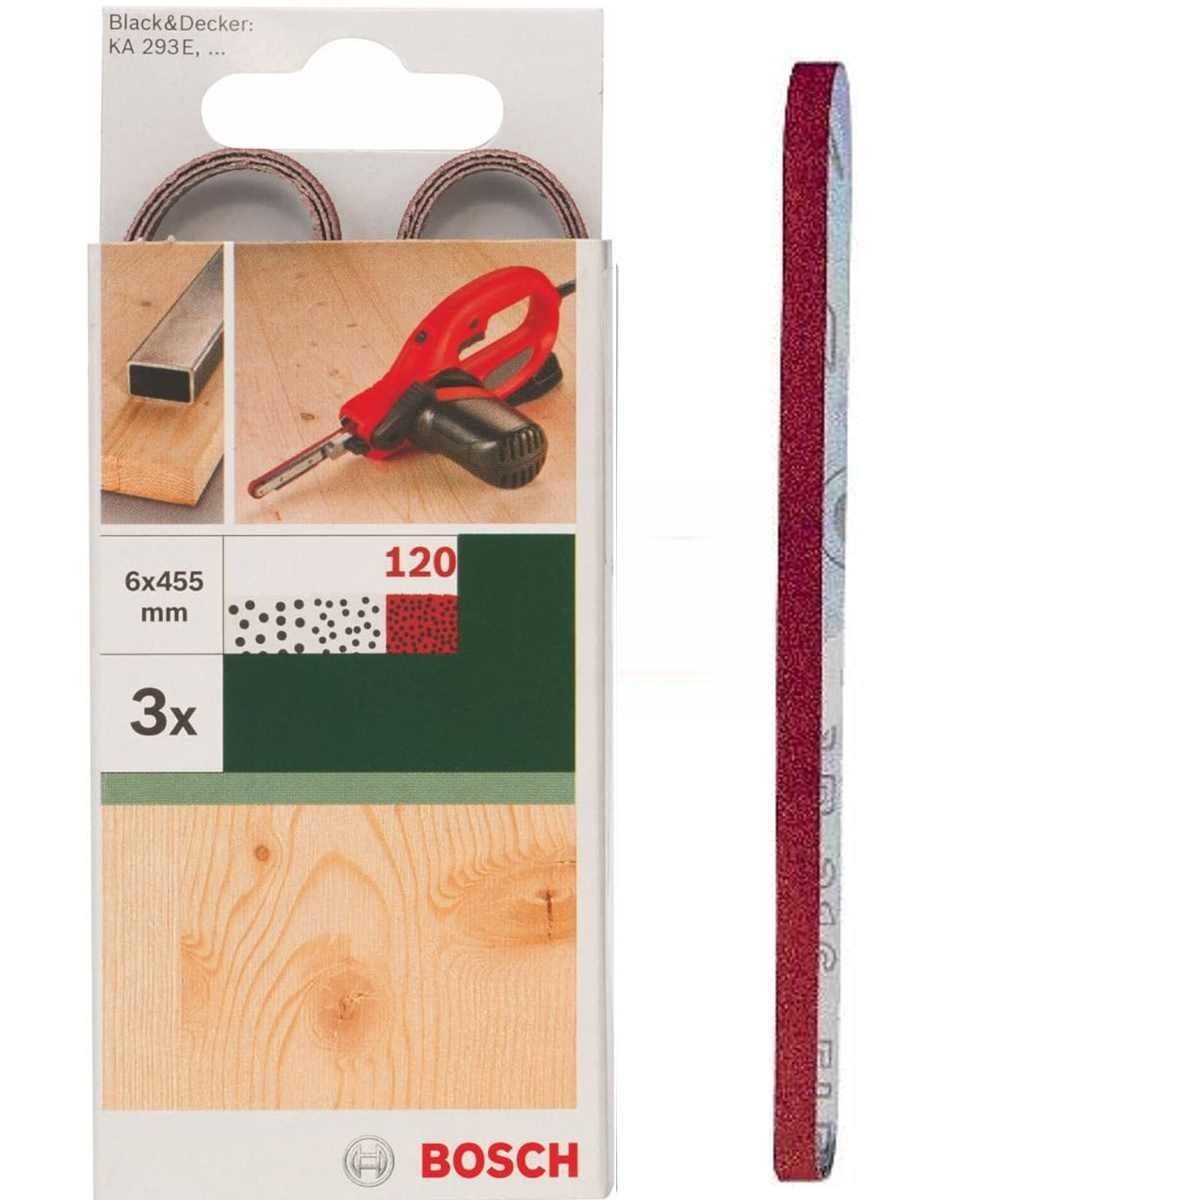 BOSCH Bohrfutter Bosch 3 für x B+D mm, Powerfile 451 K 293E 120 KA Schleifbänder x 6